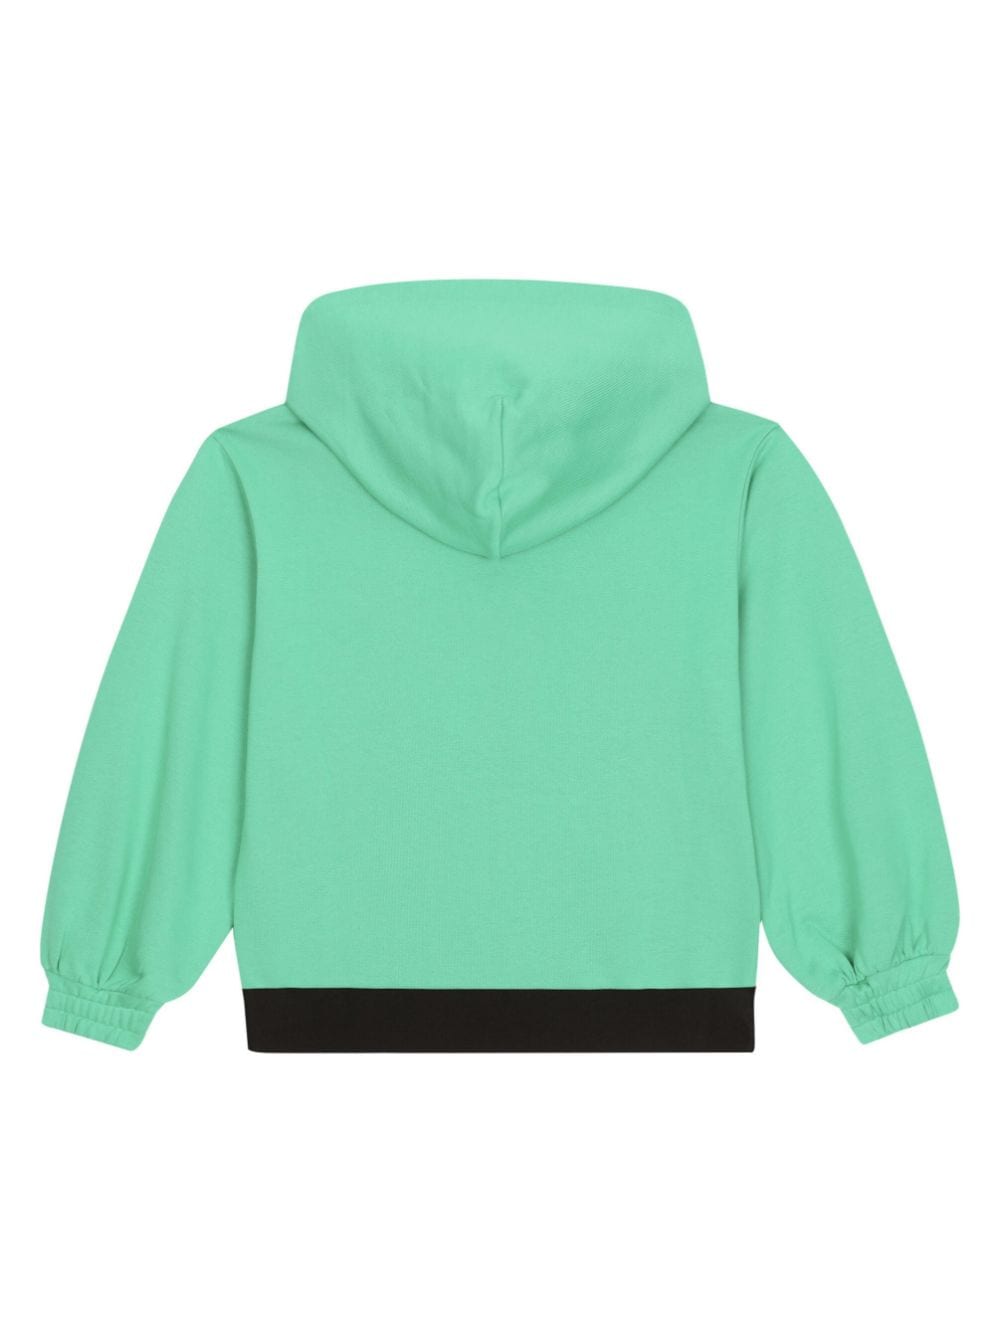 Dolce & Gabbana Kids logo-waist zipped sweatshirt - Groen